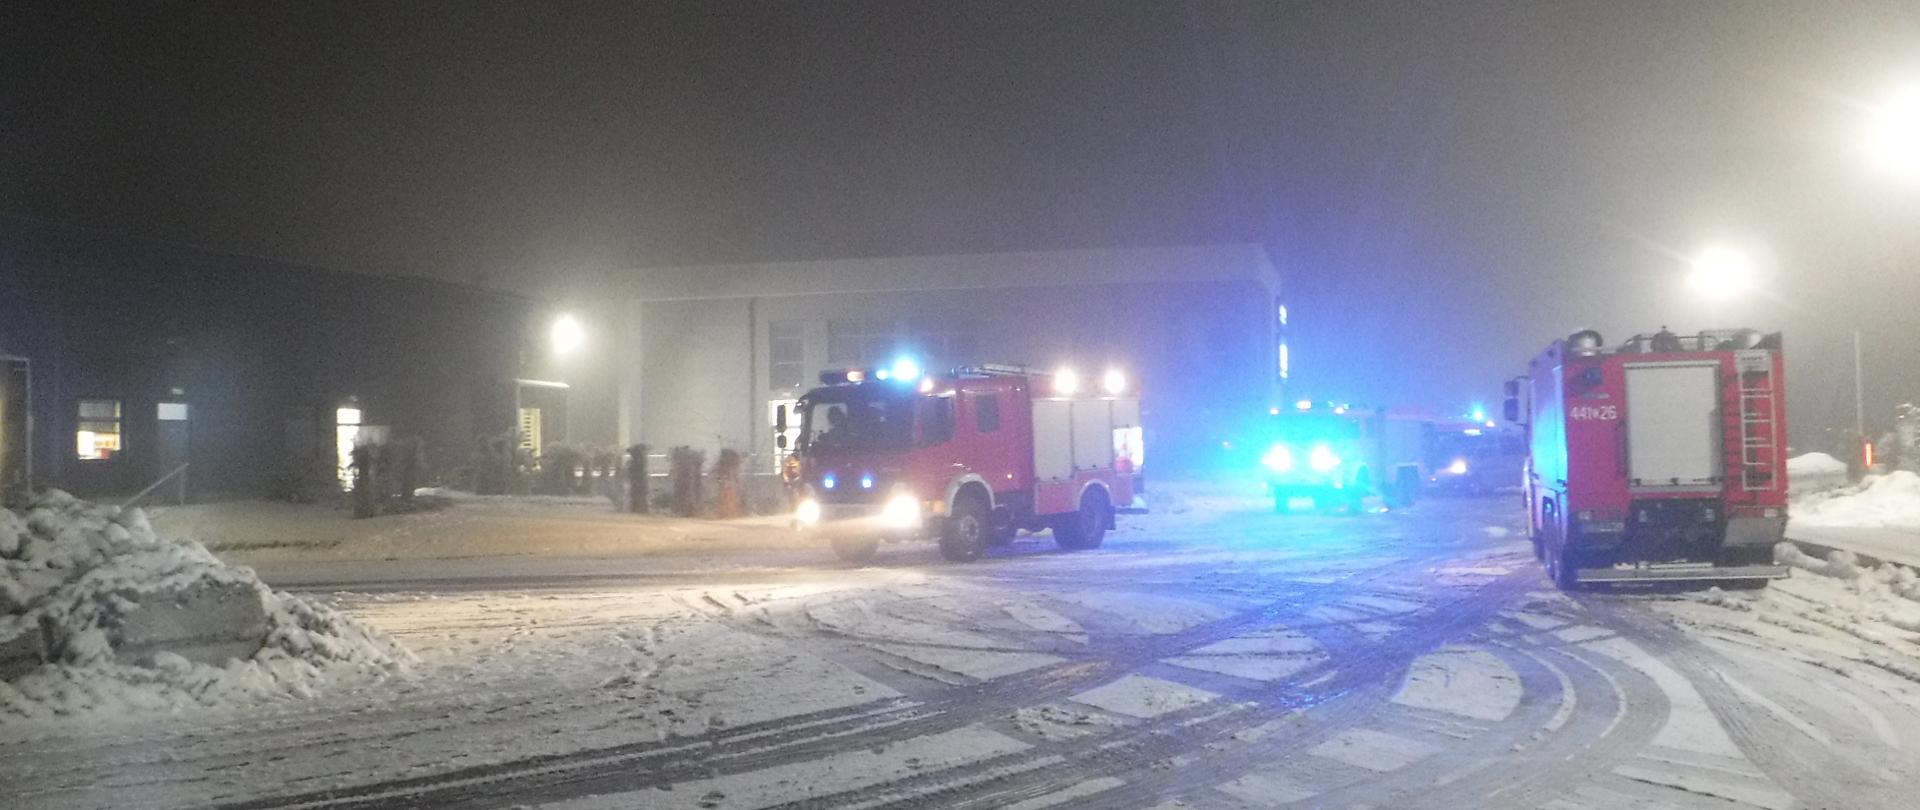 Na zdjęciu widać samochody straży pożarnej na tle magazynu, w którym doszło do pożaru. Jest ciemno a na ziemi leży śnieg.